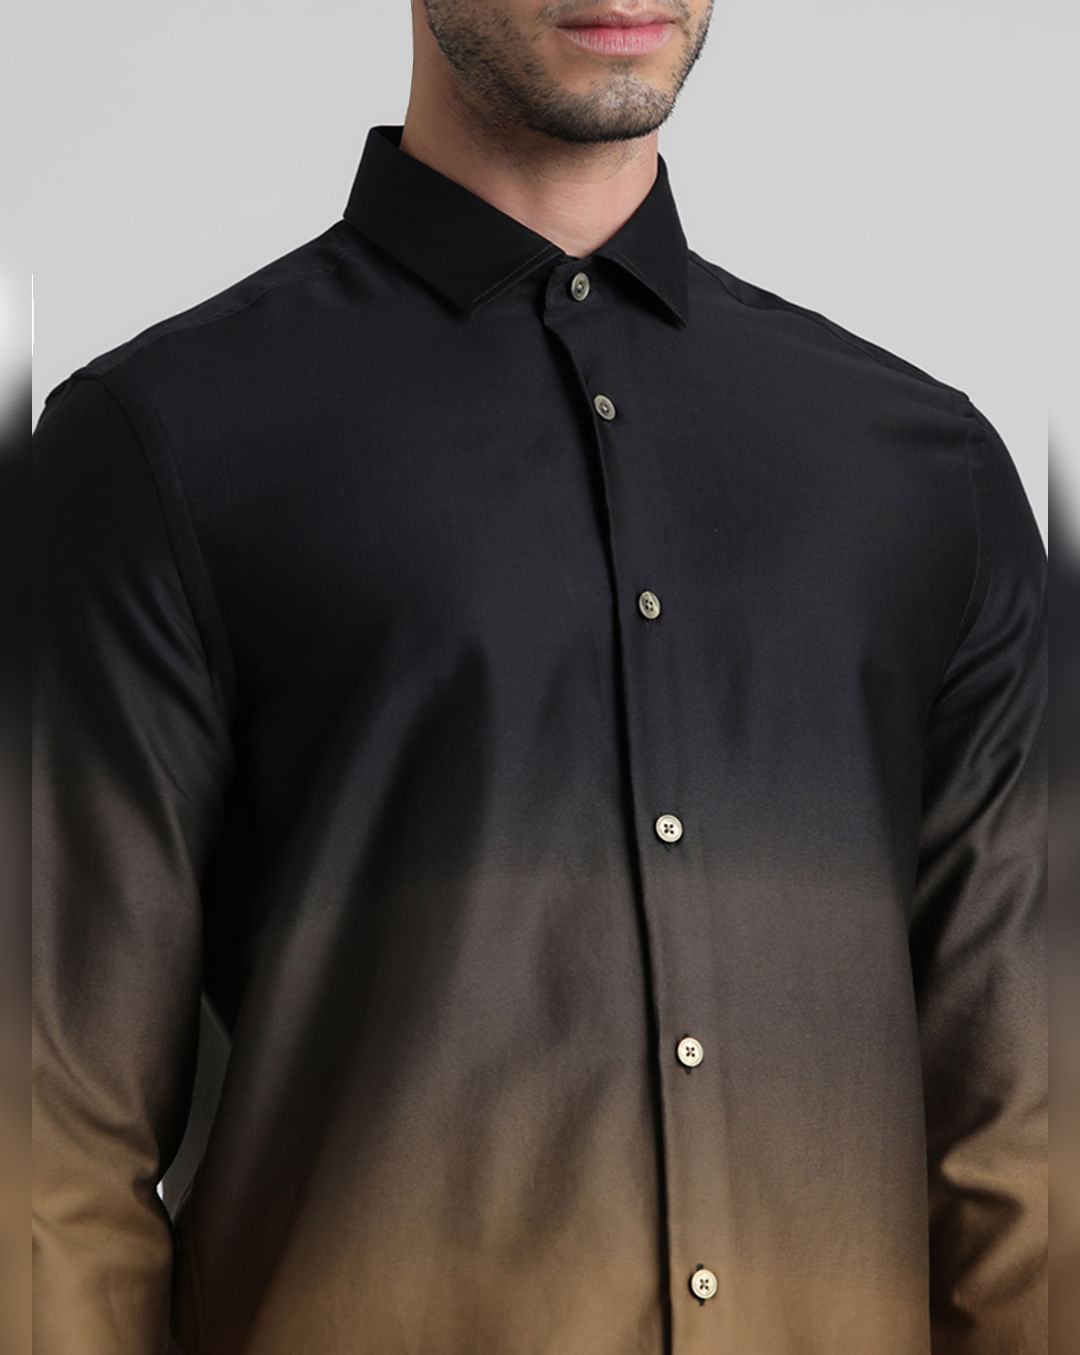 Hutspah Men’s Disco/Party Black Long Sleeve Button Front Shirt L